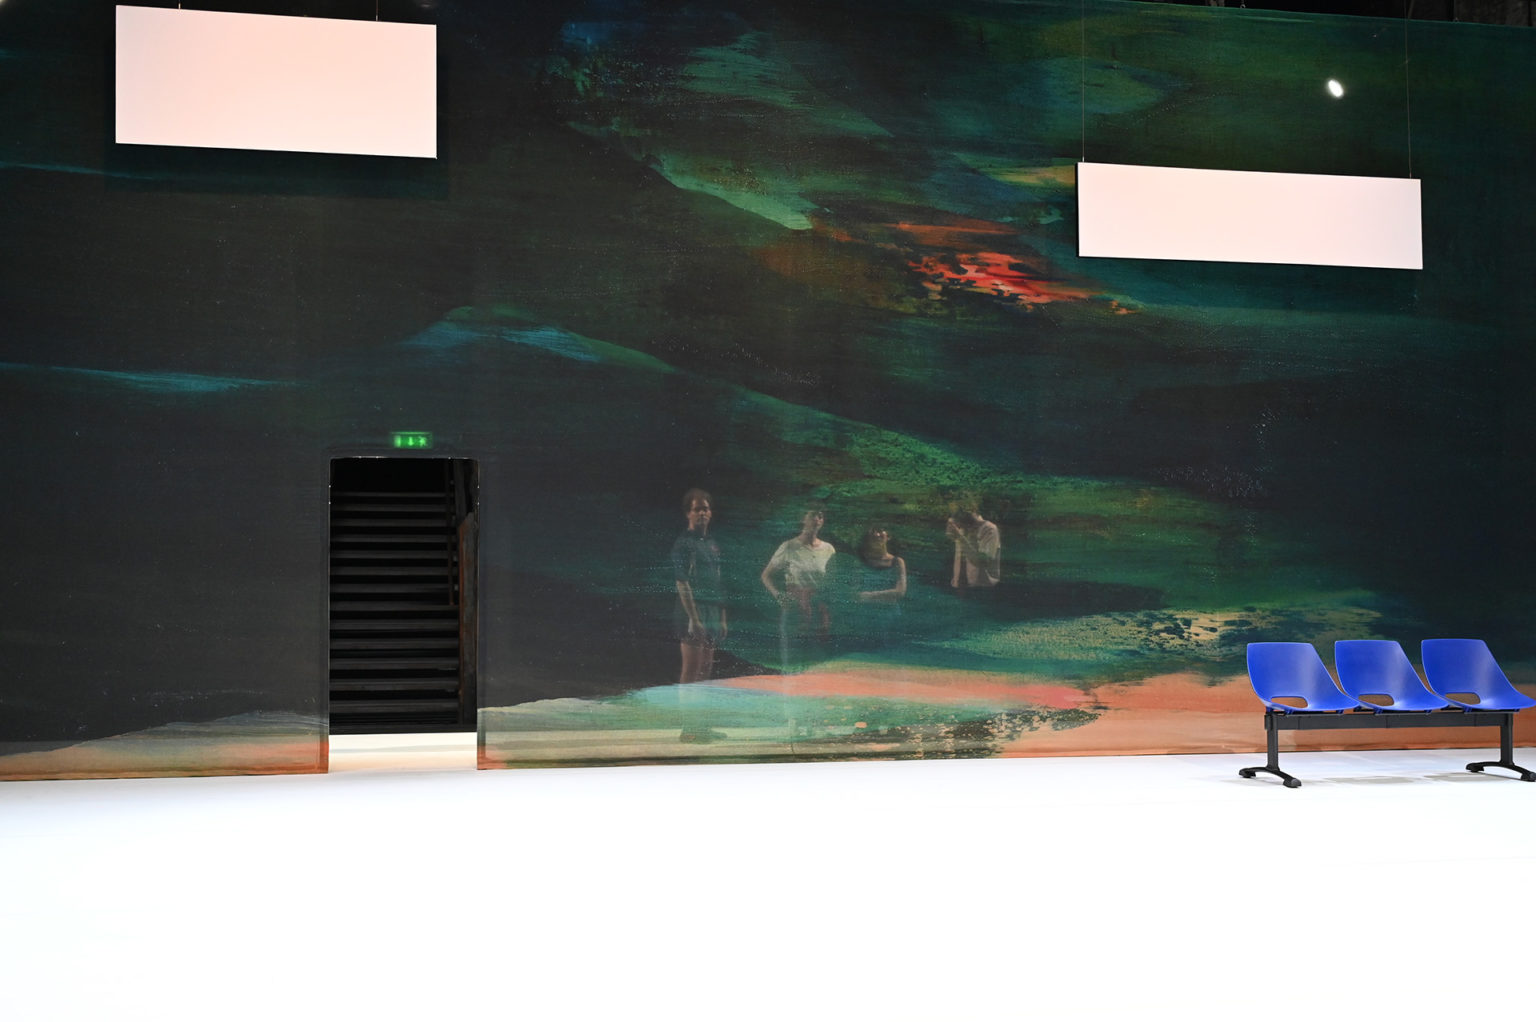 Les quatre acteurs et actrices sont derrière un mur de couleur transparent et regardent vers nous. Il y a un banc bleu.